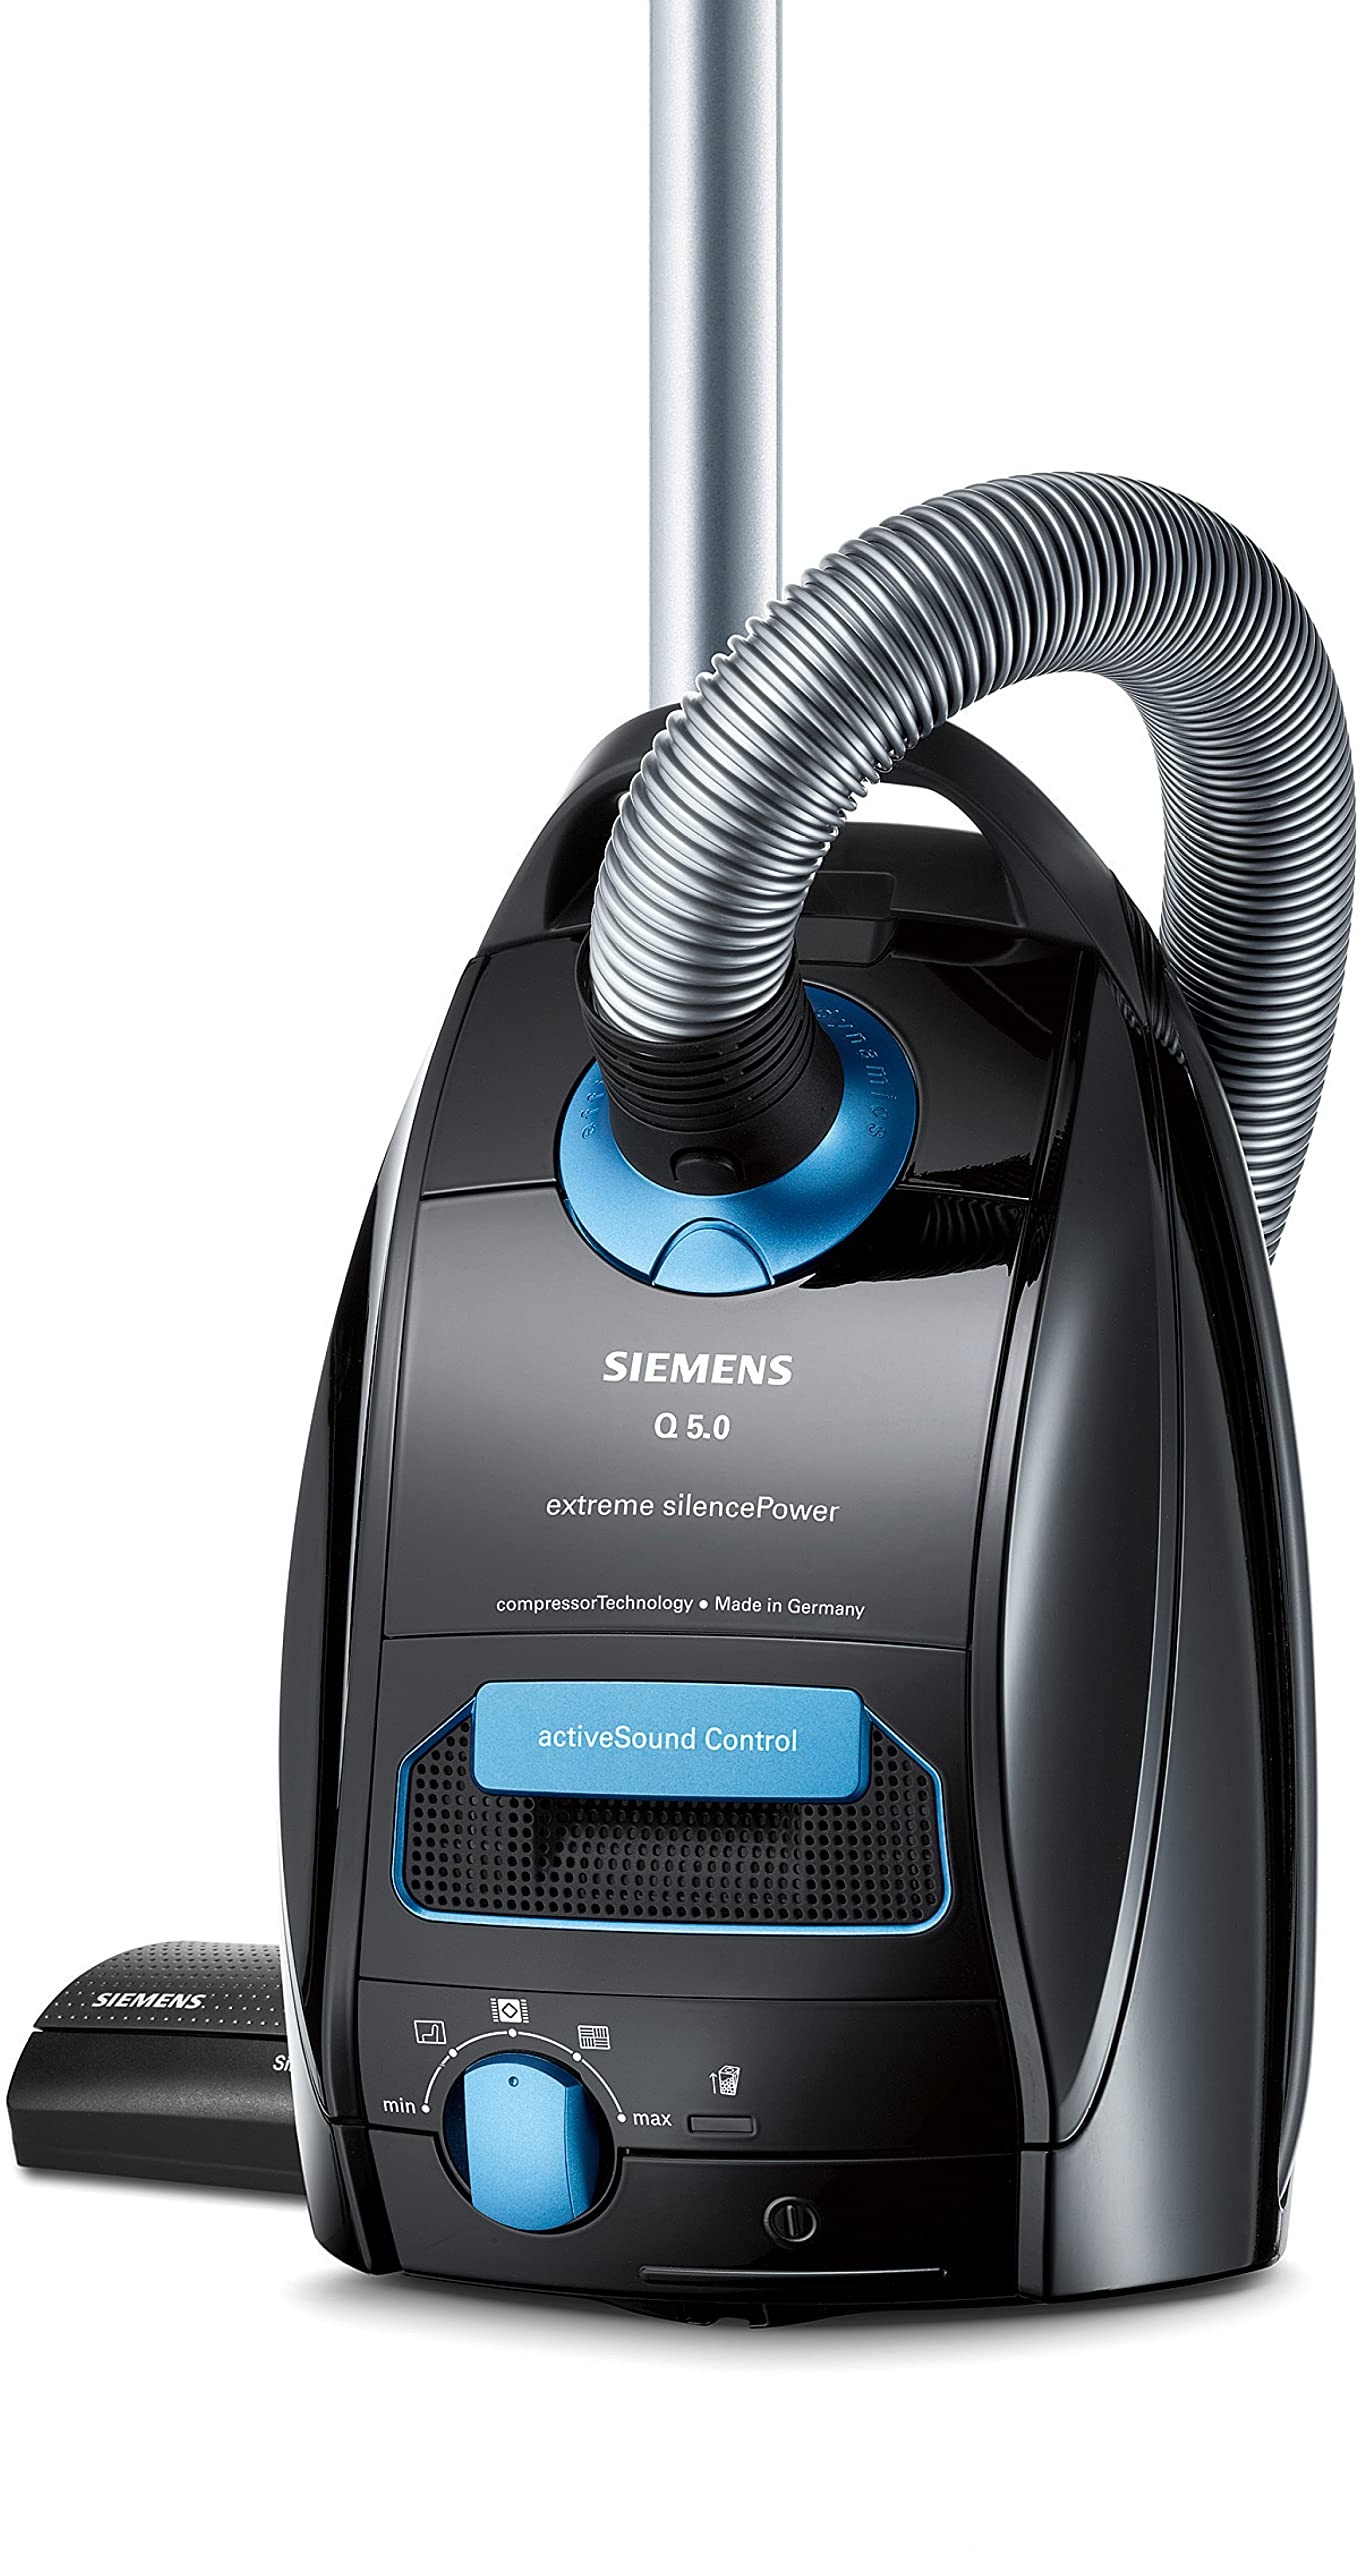 Siemens Staubsauger mit Beutel Q5.0 extreme silencePower VSQ5X1230, ideal für Allergiker, Hygiene-Filter, starke Saugleistung, Bodendüse für Parkett, Teppich, Fliesen, langes Kabel, 850 W, schwarz